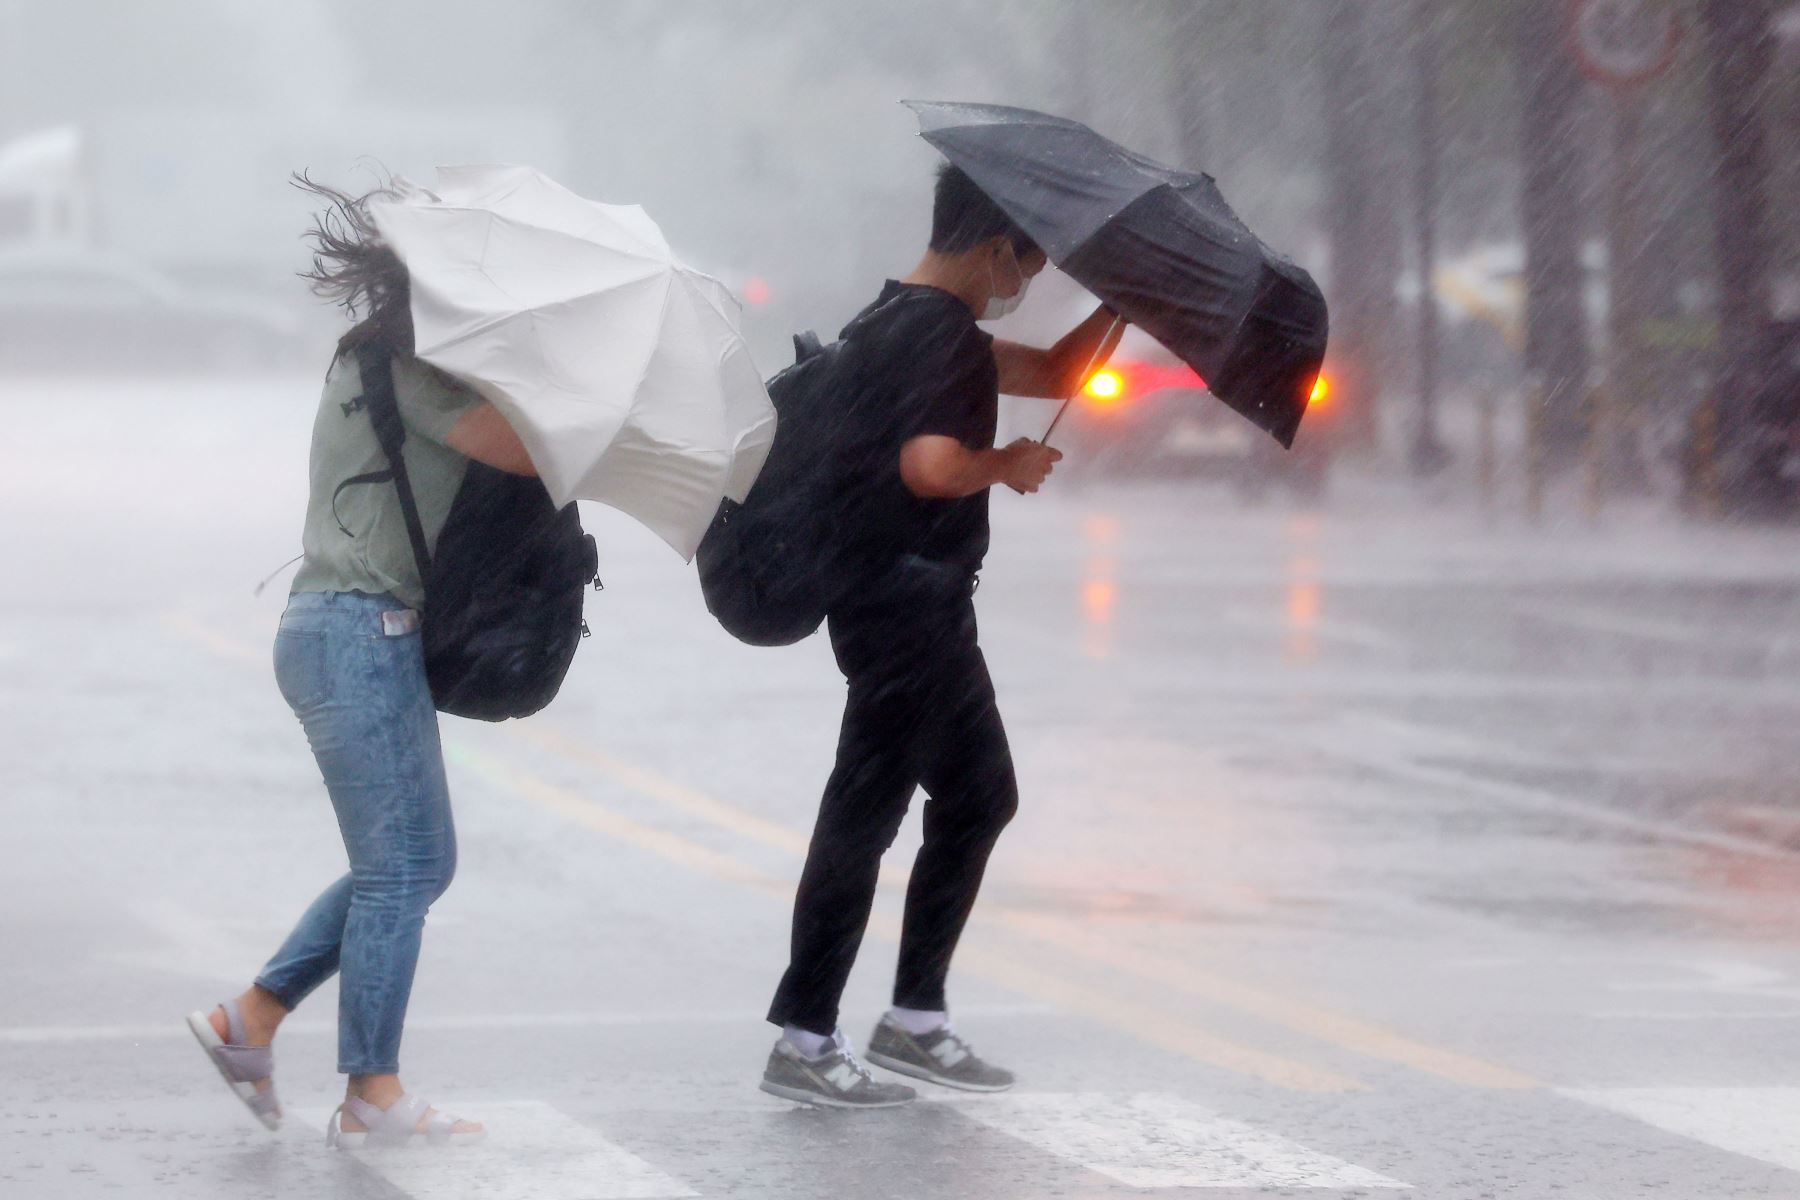 Dos personas intentan protegerse de la fuerte lluvia mientras cruzan un paso de peatones en Seúl, Corea del Sur.
Foto: EFE